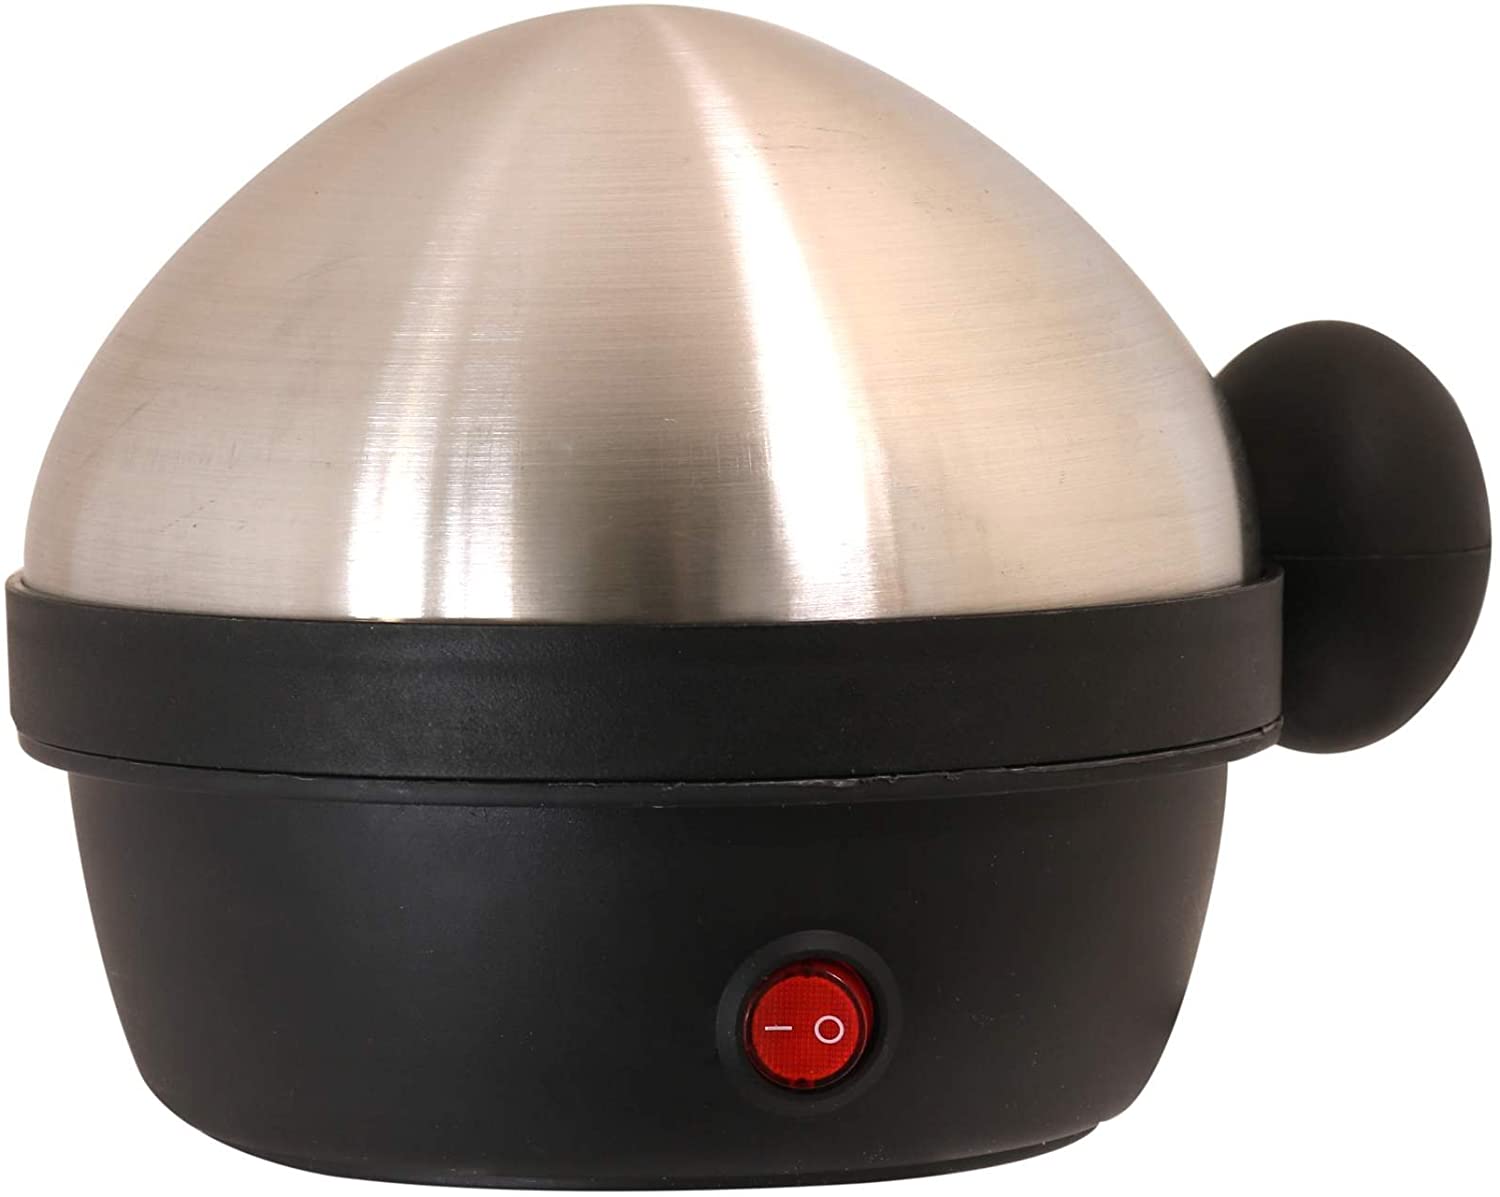 Egg Boiler 7 Eggs Wow Your Style 360 Watt Stainless Steel